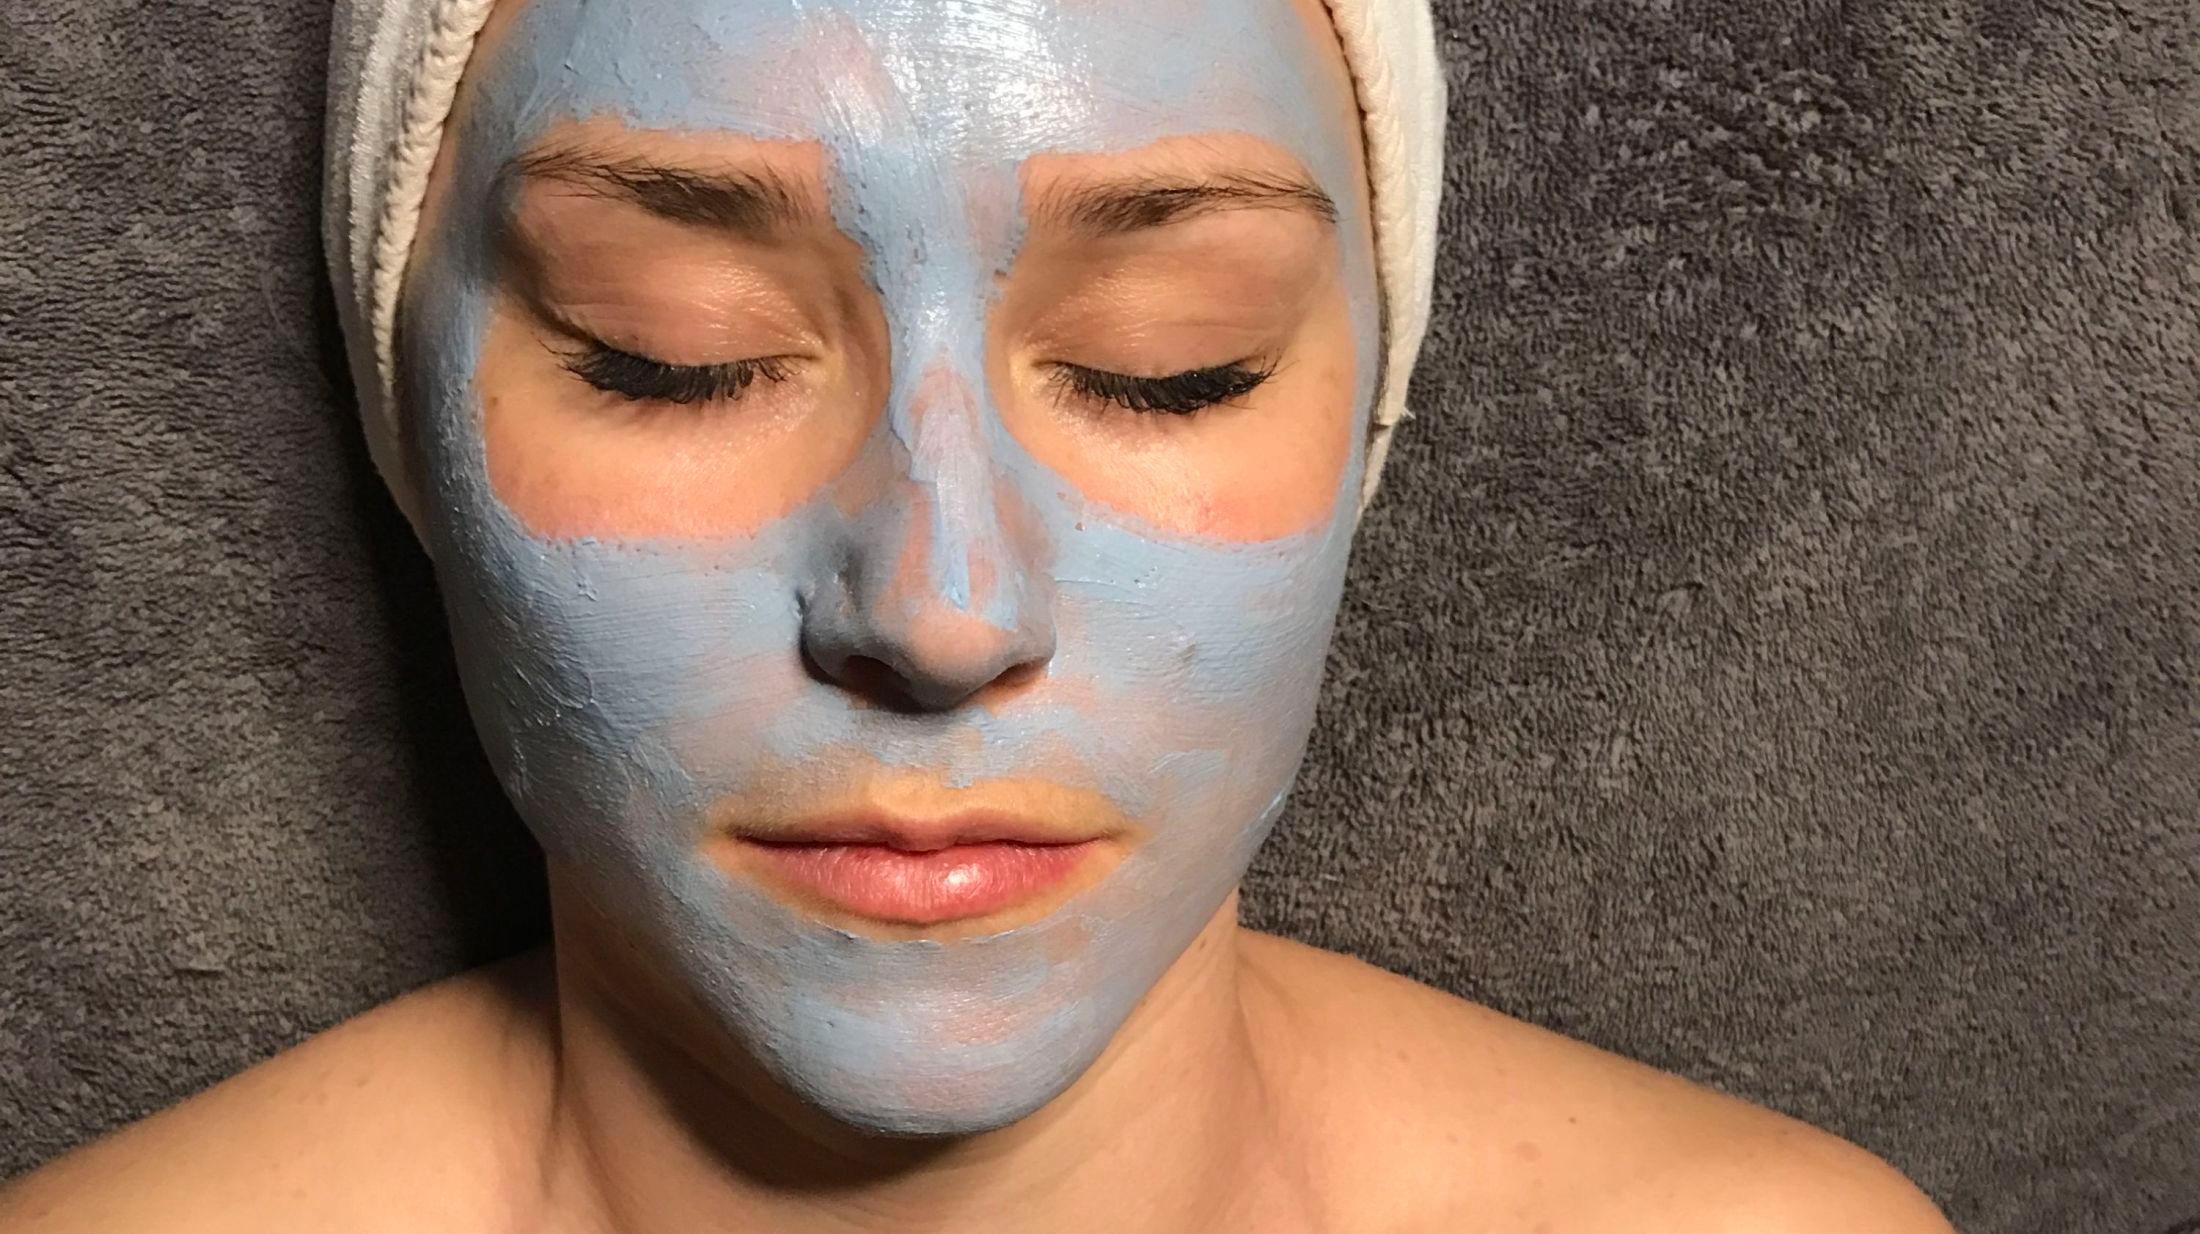 Den blå masken «Sulfur masque» fra Zo skin som jeg fikk på Beths Beauty, skal ha en oppstrammende effekt på huden, fjerne urenheter og forminske porene. Foto: VG.